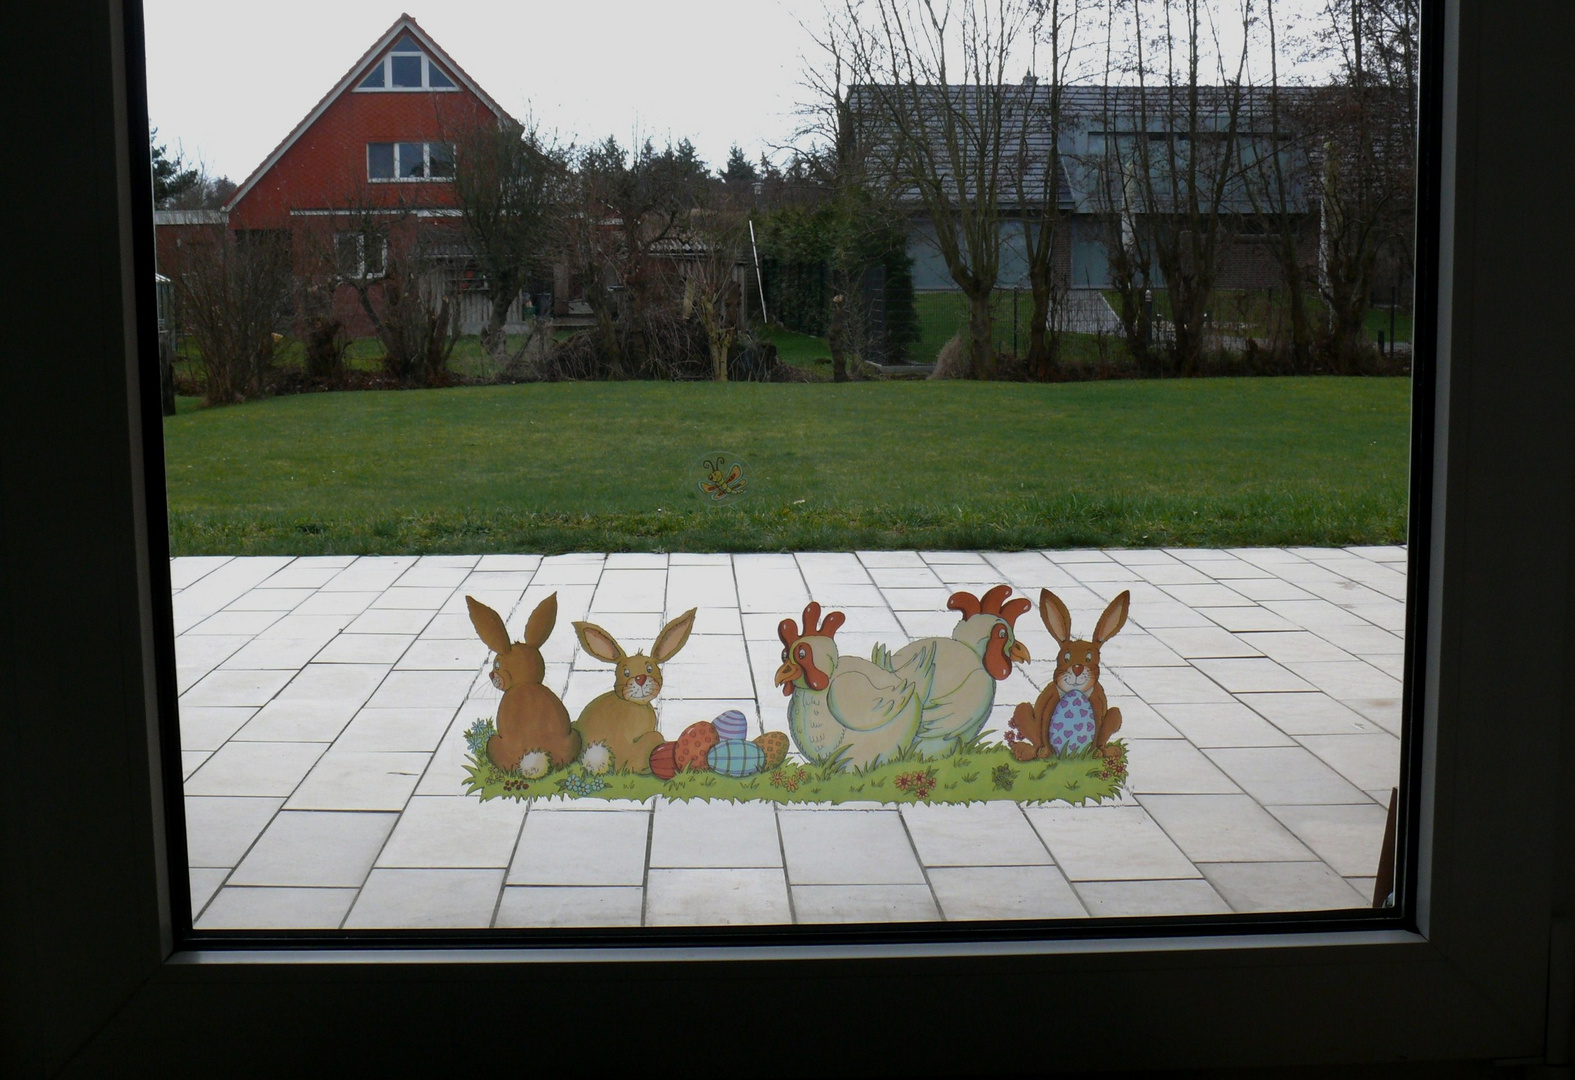 Borkum 2010 - Wünsche allen frohe Ostern